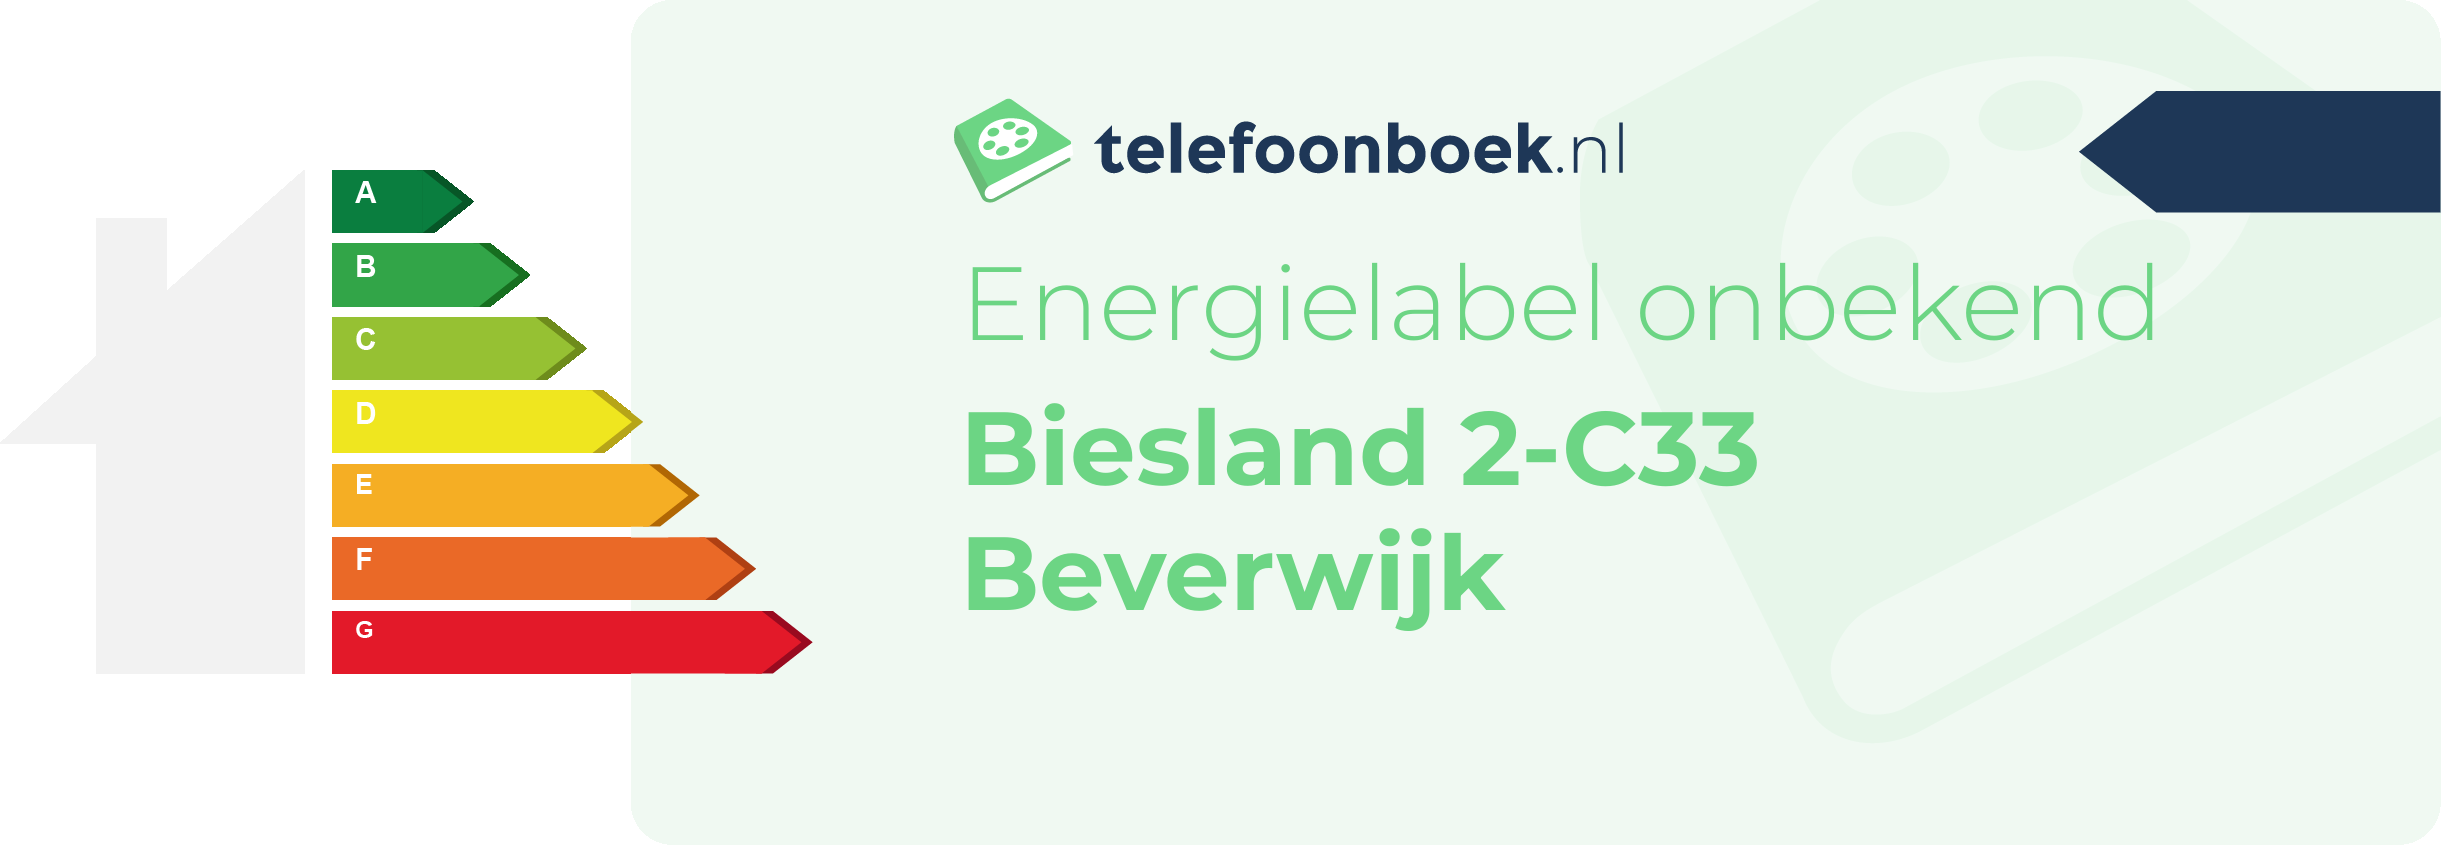 Energielabel Biesland 2-C33 Beverwijk